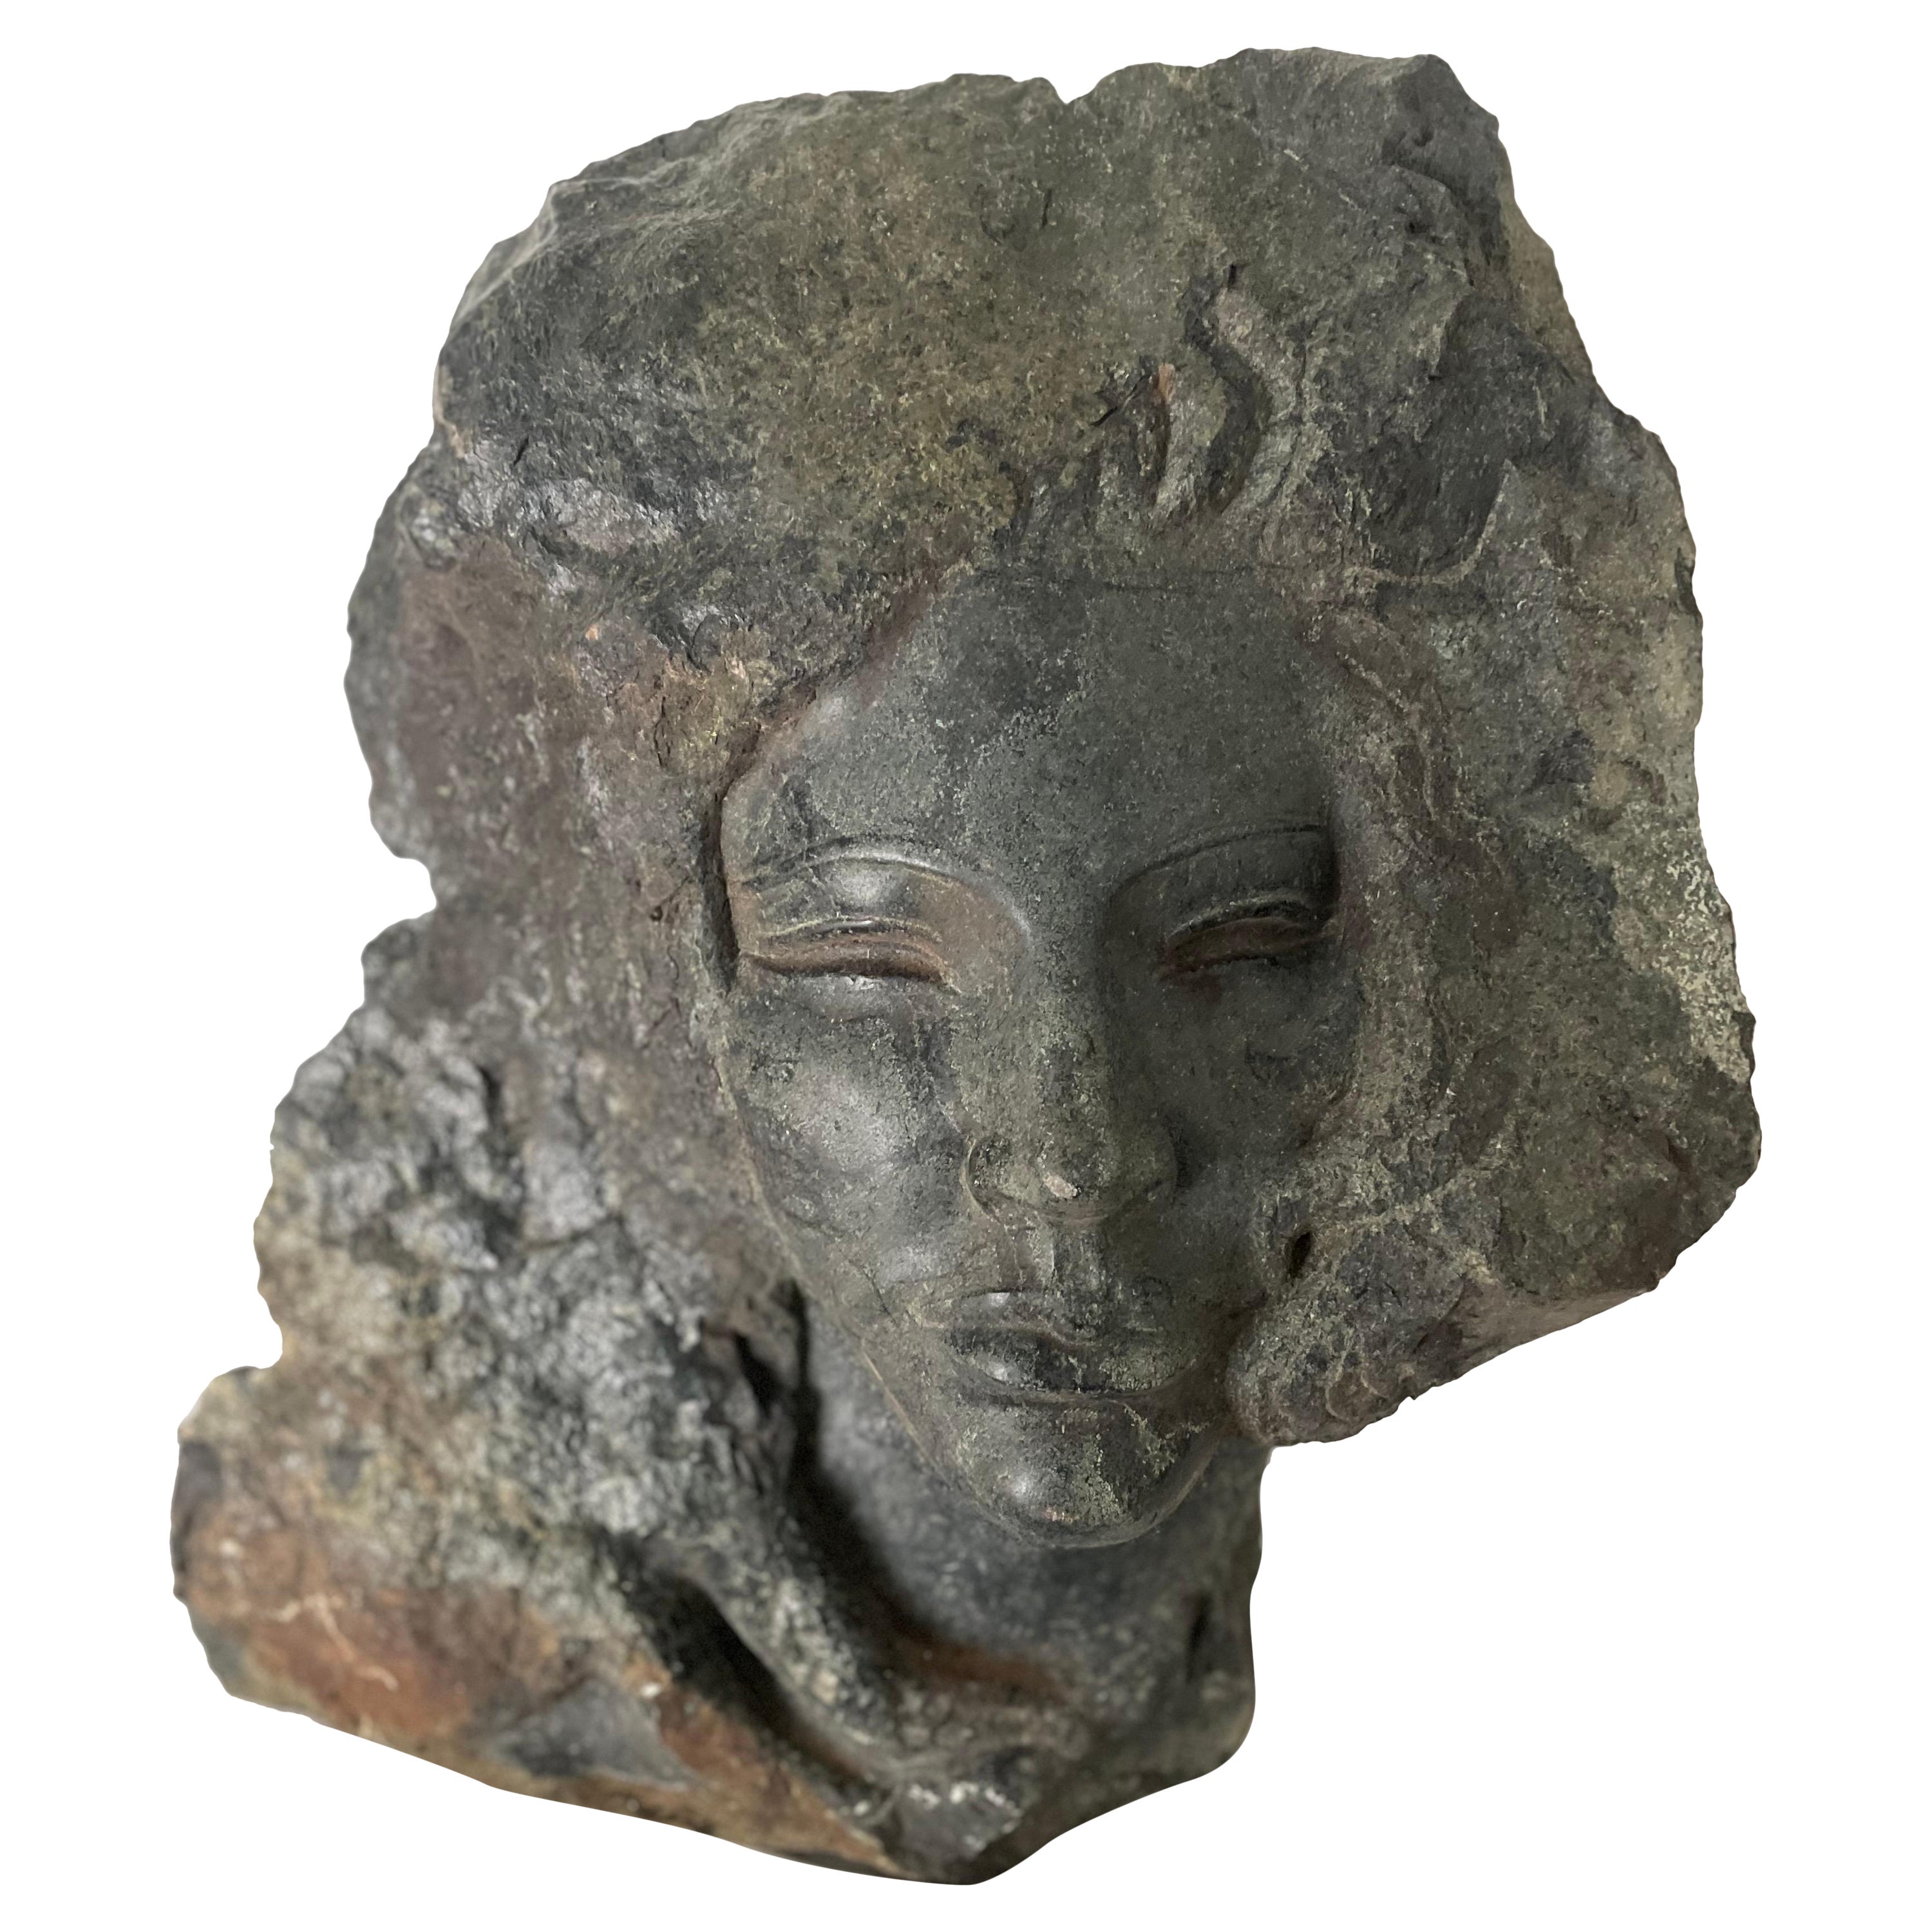 Skulptur einer weiblichen Skulptur, geschnitzte Steinbüste einer Frau, signiert vom Künstler Charles Cutler